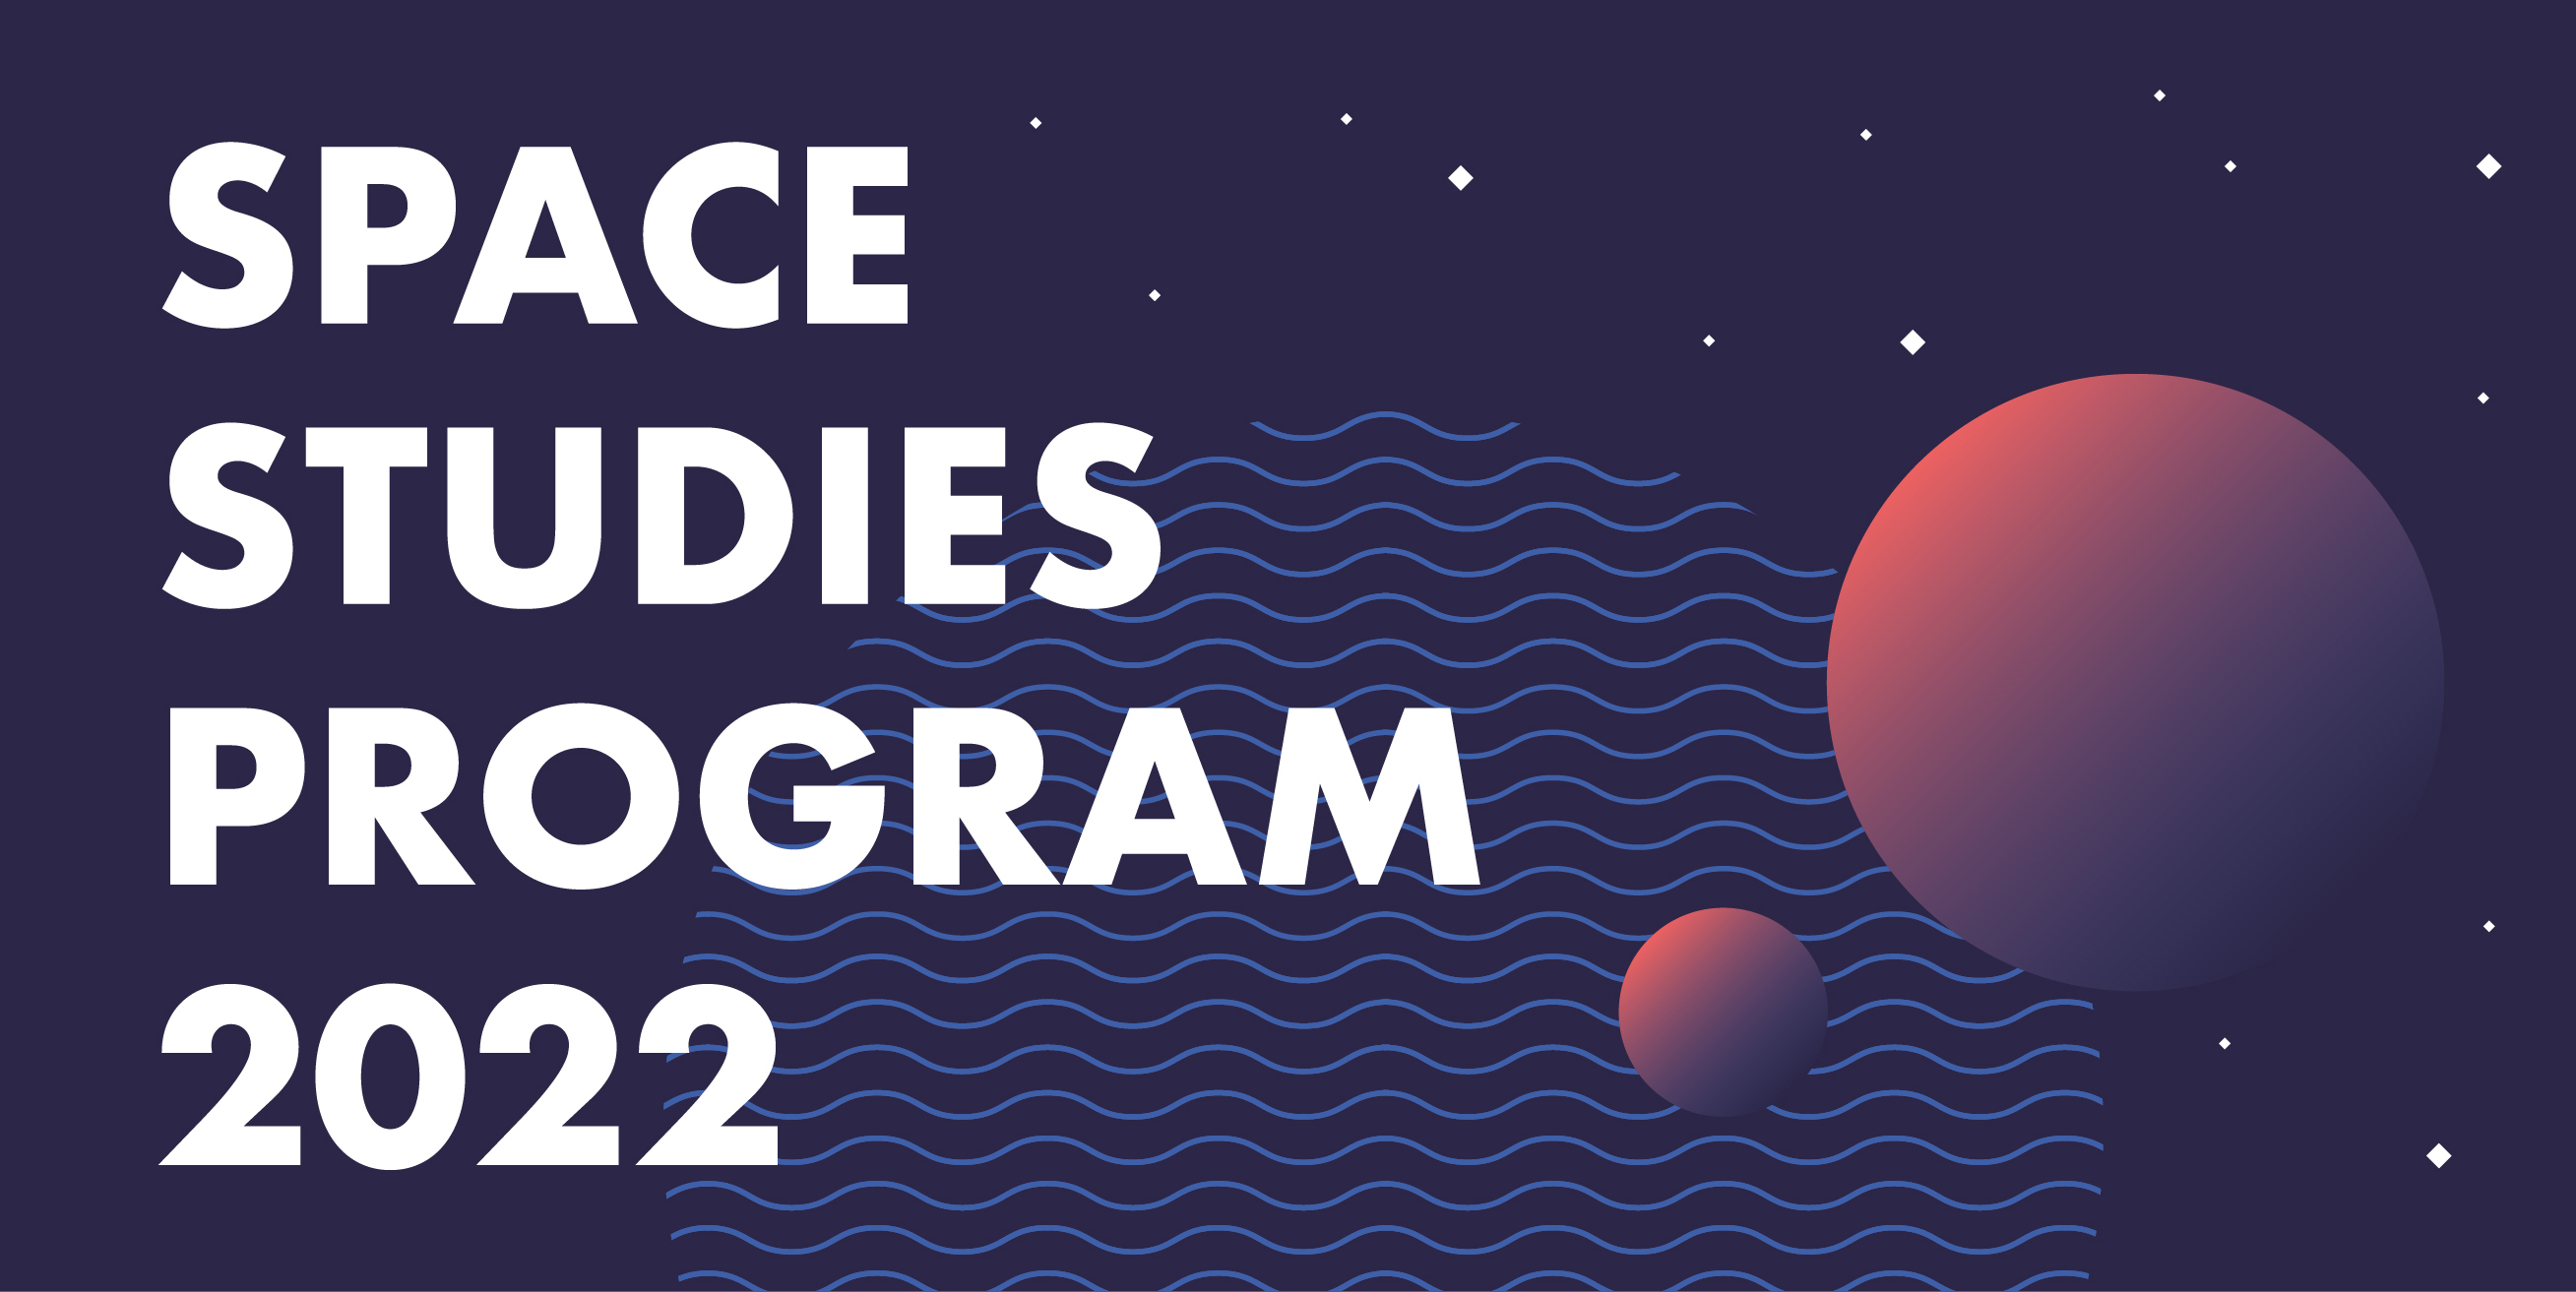 Space Studies Program 2022 – Eventos Abertos durante o mês de julho